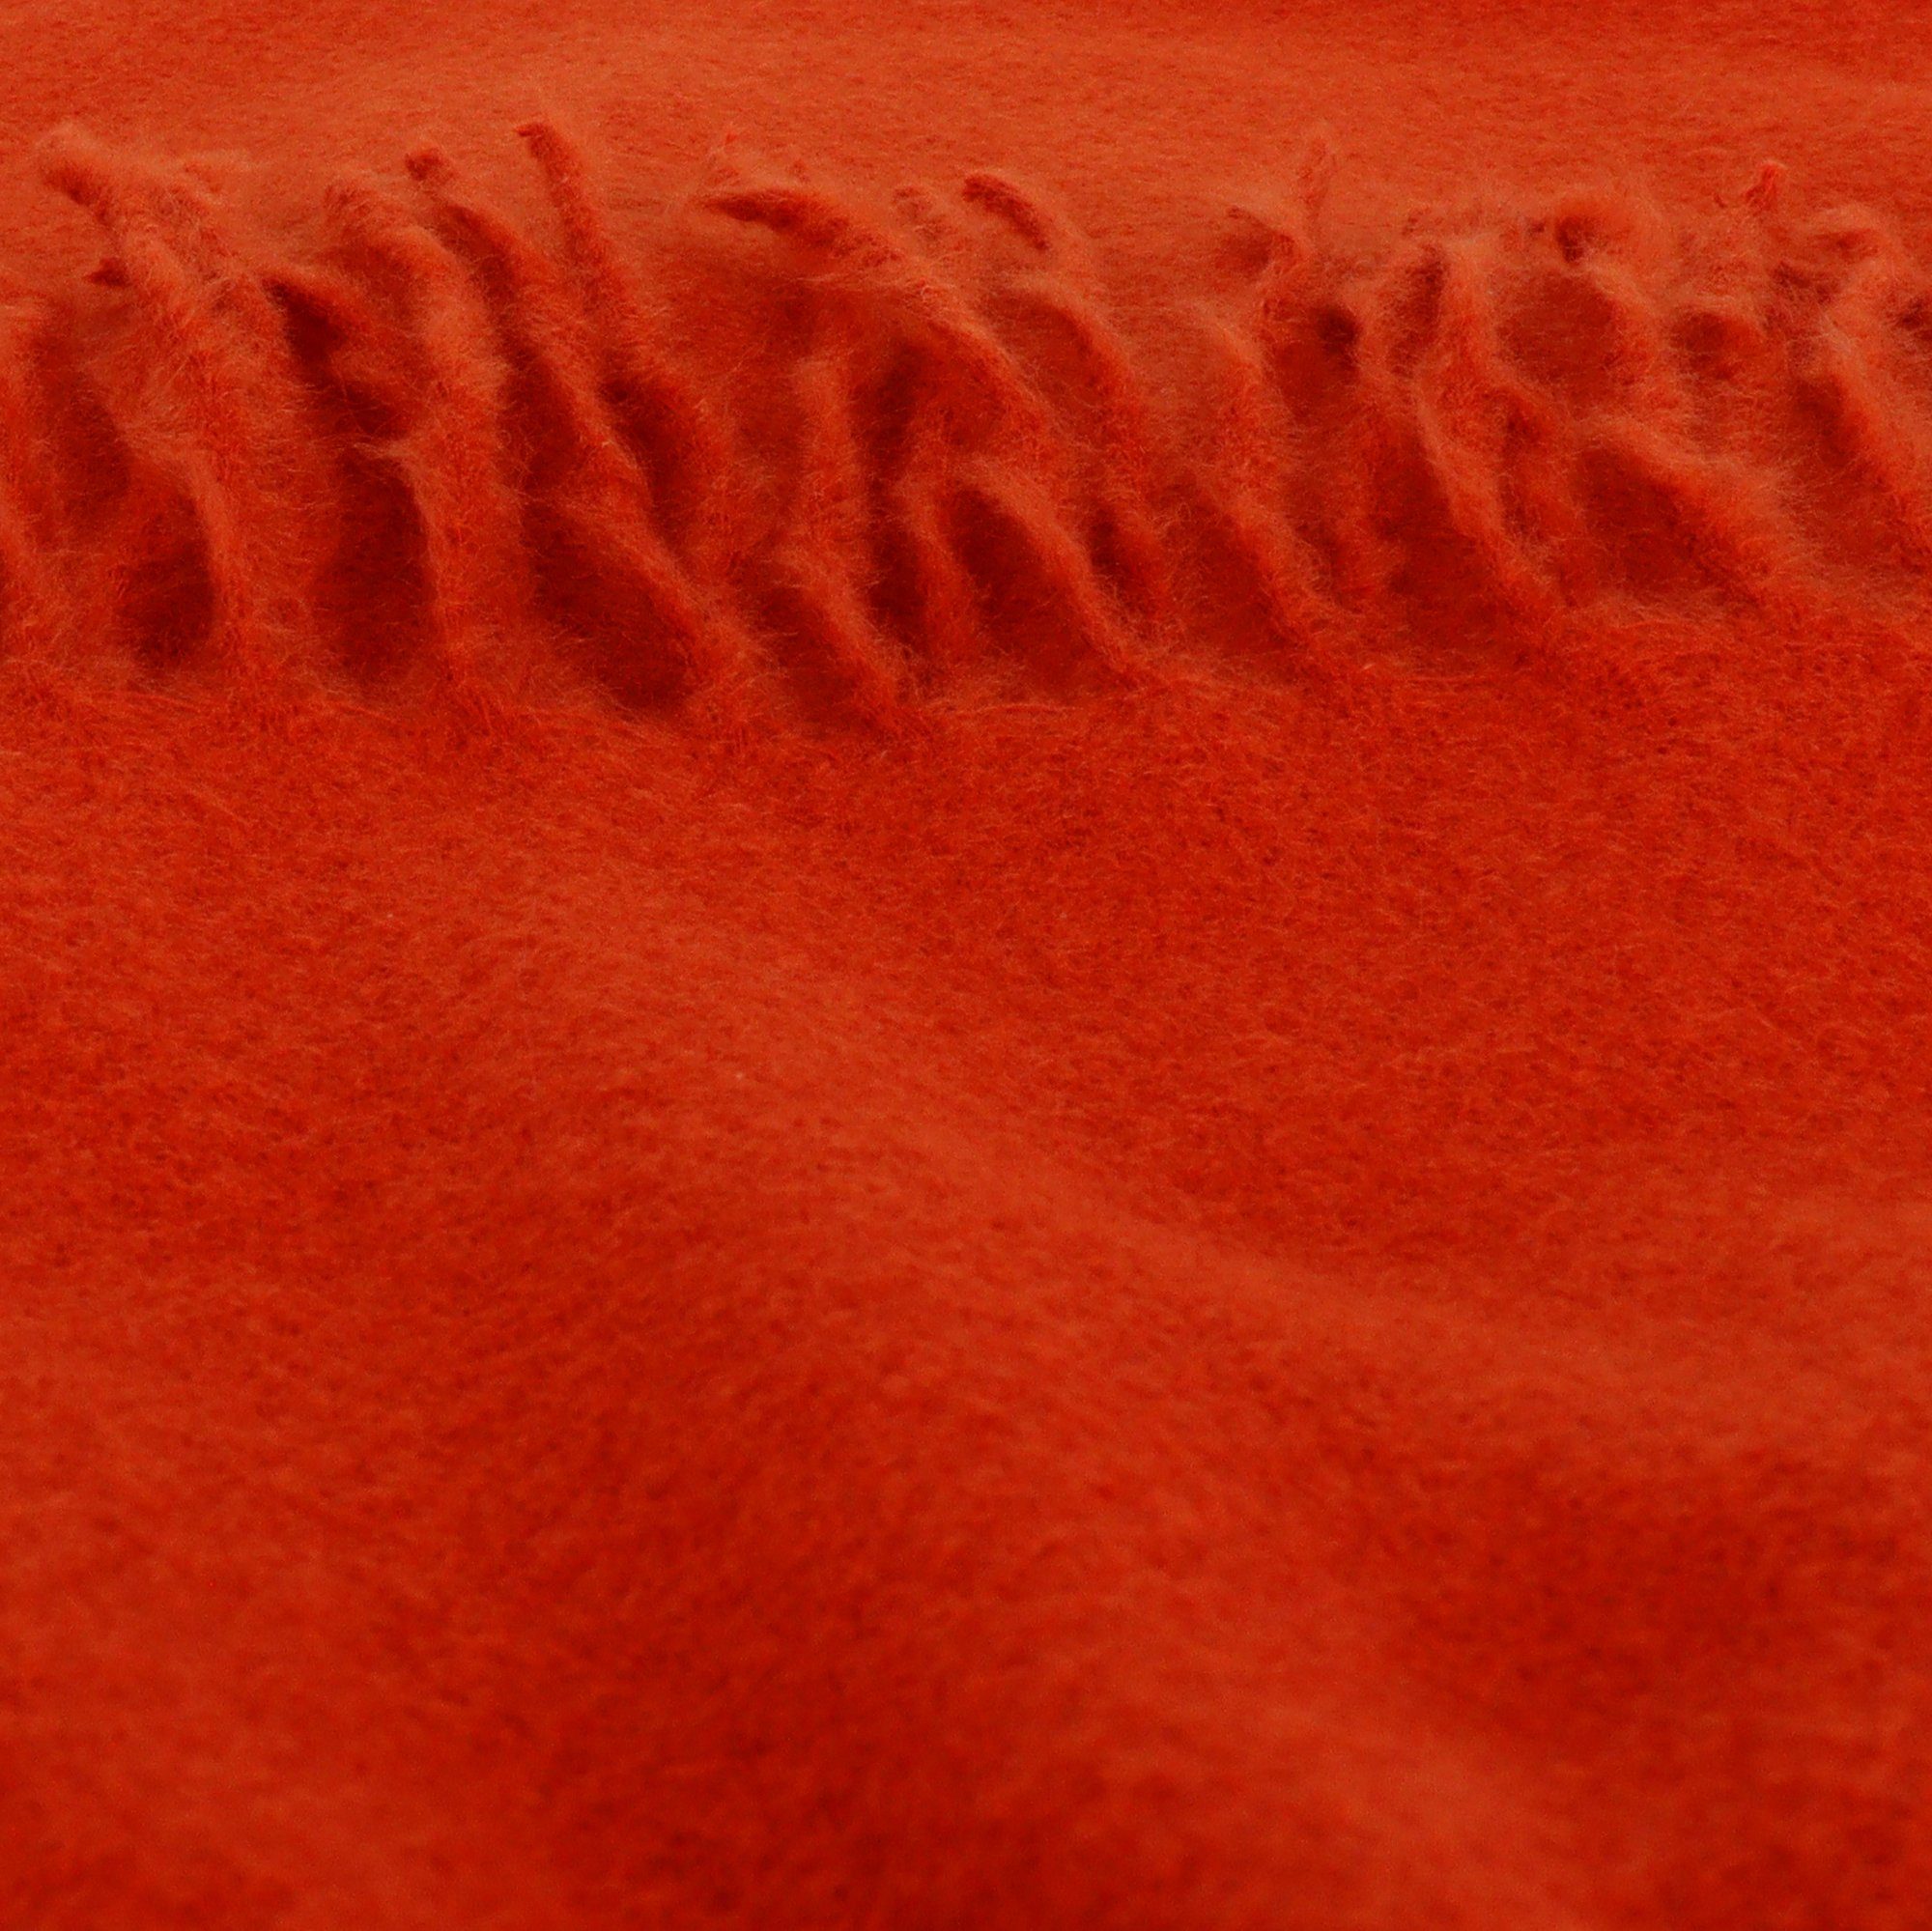 ZEBRO orange Modeschal Schal